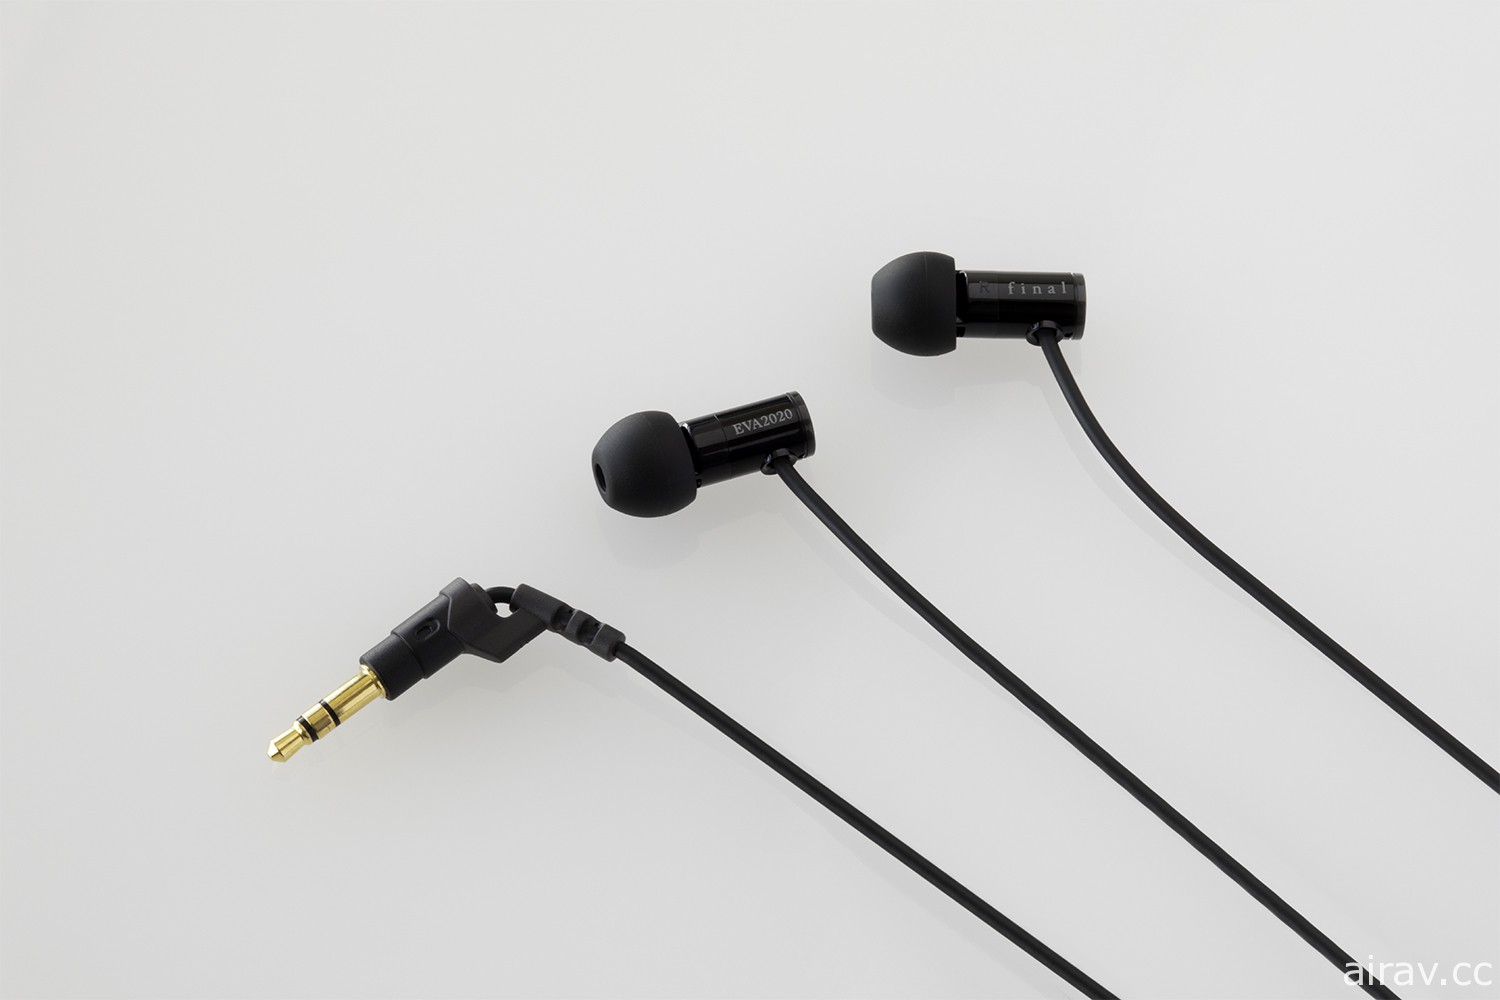 SNEXT 发表《福音战士》合作设计款式无线 / 有线耳机 预定 8 月上市